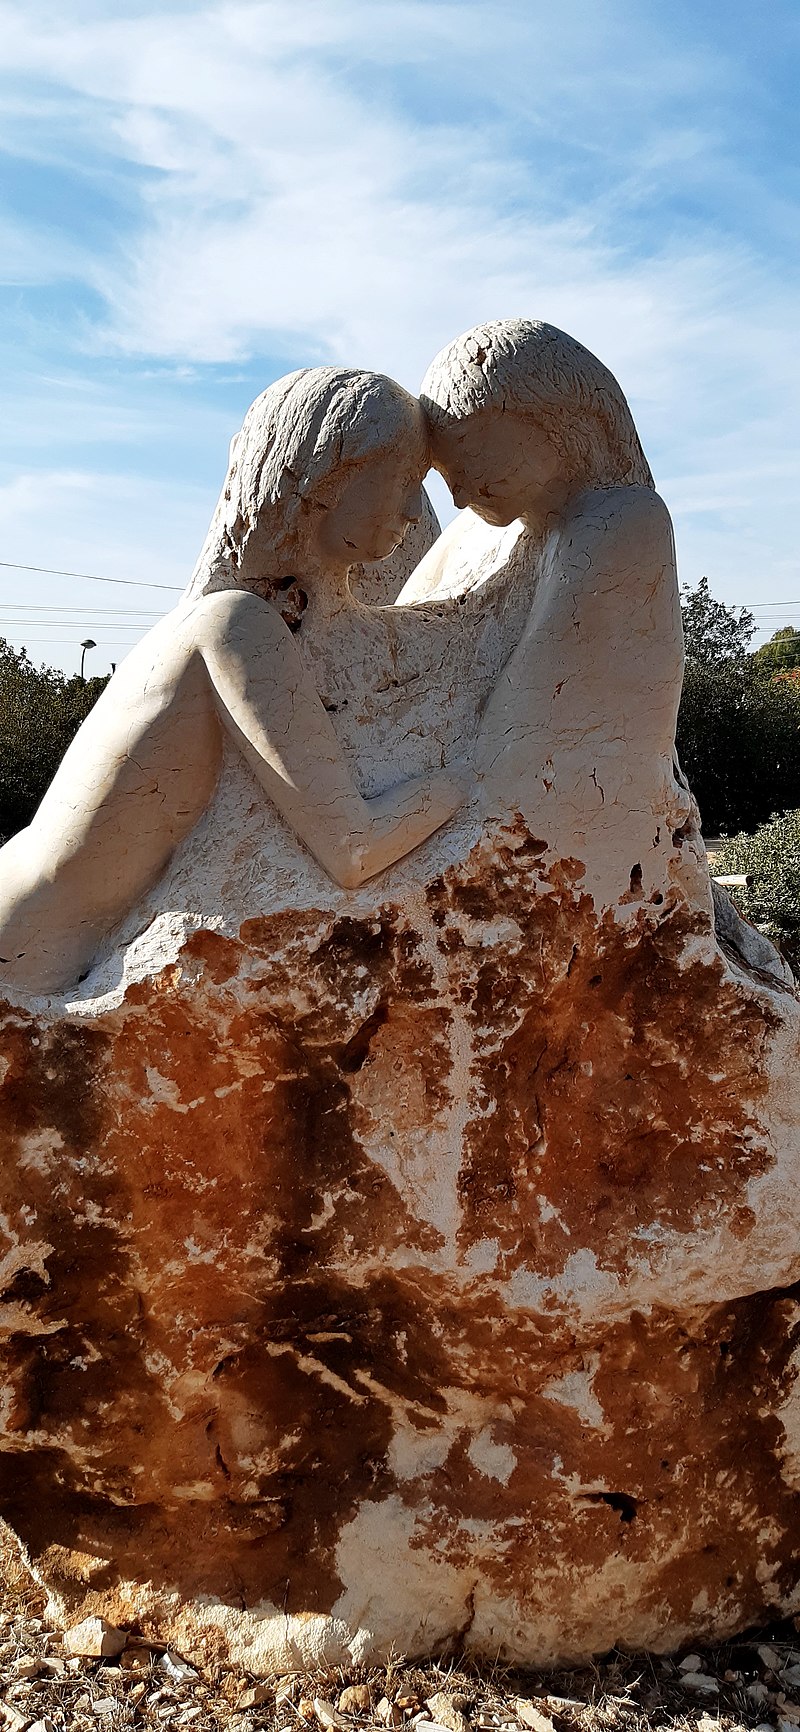 גן הפסלים של רמי פלדשטיין מנוף